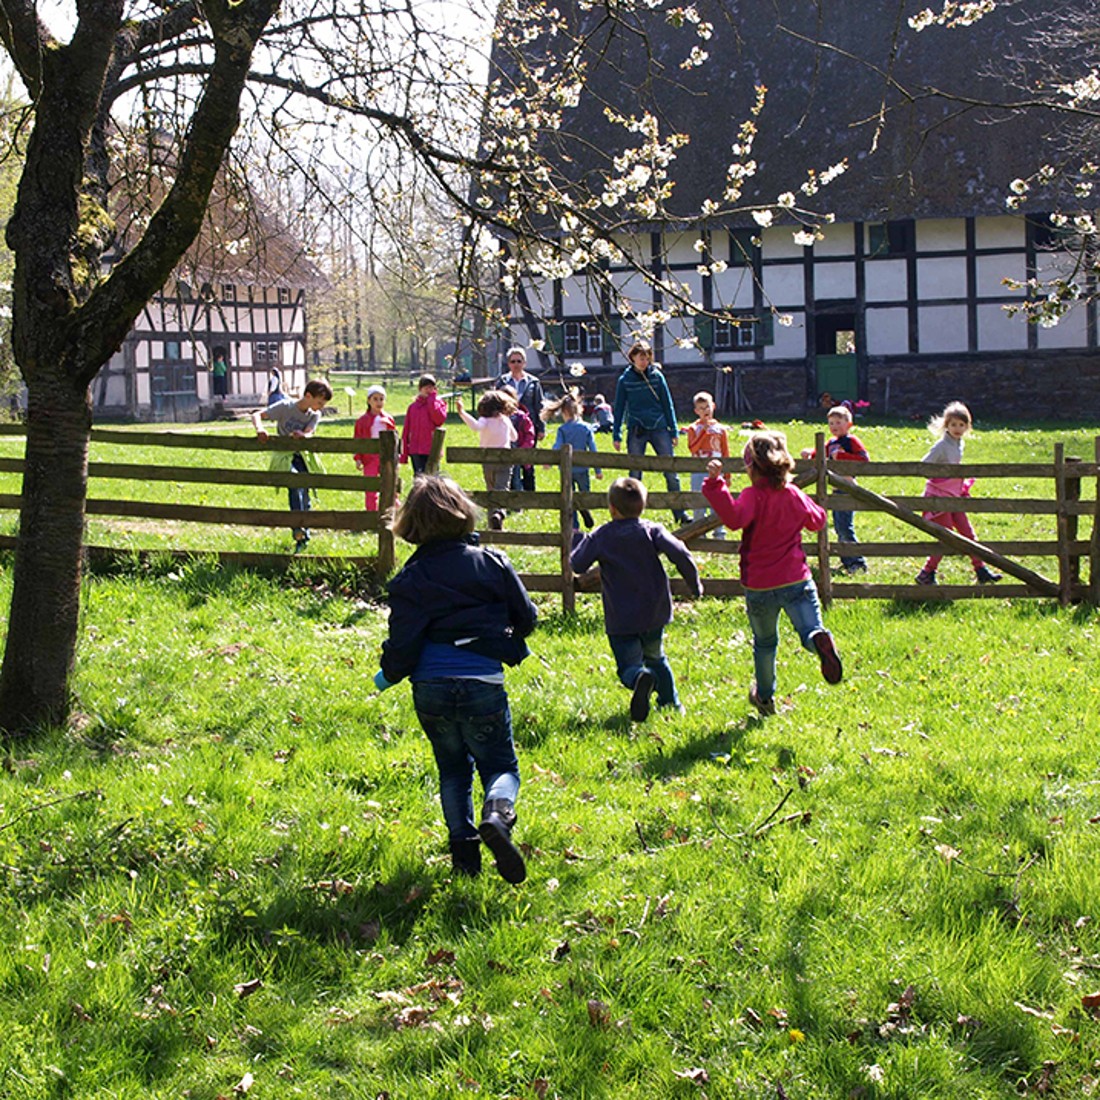 Kinder rennen über eine Wiese, im Hintergrund sieht man Fachwerkhäuser